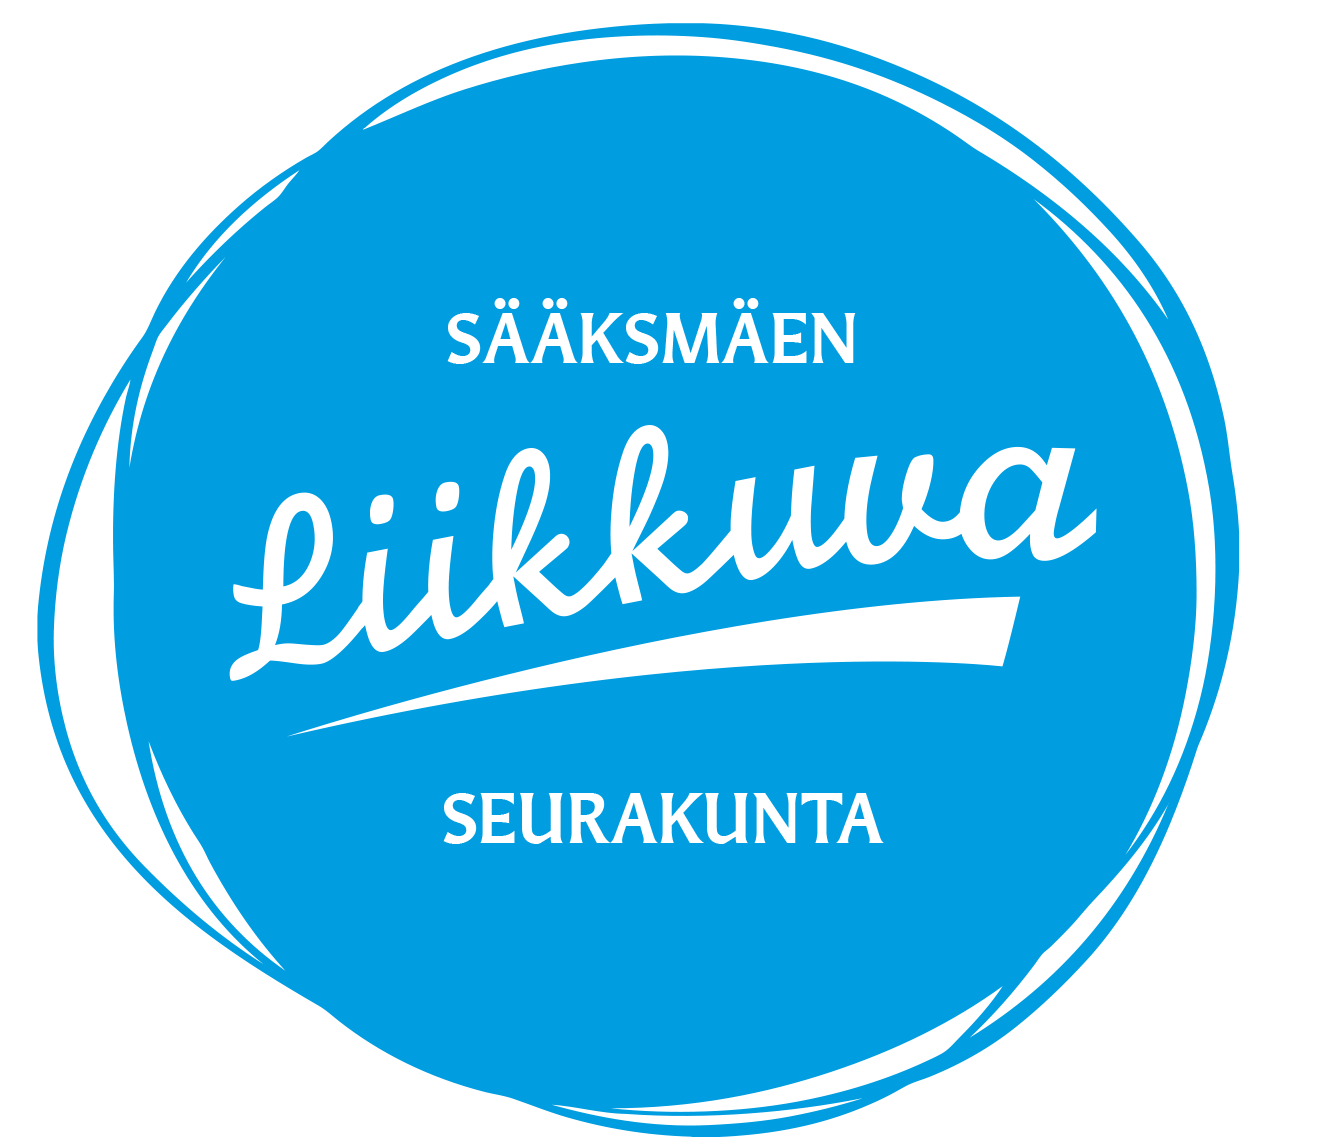 Sääksmäen liikkuva seurakunta logo sininen